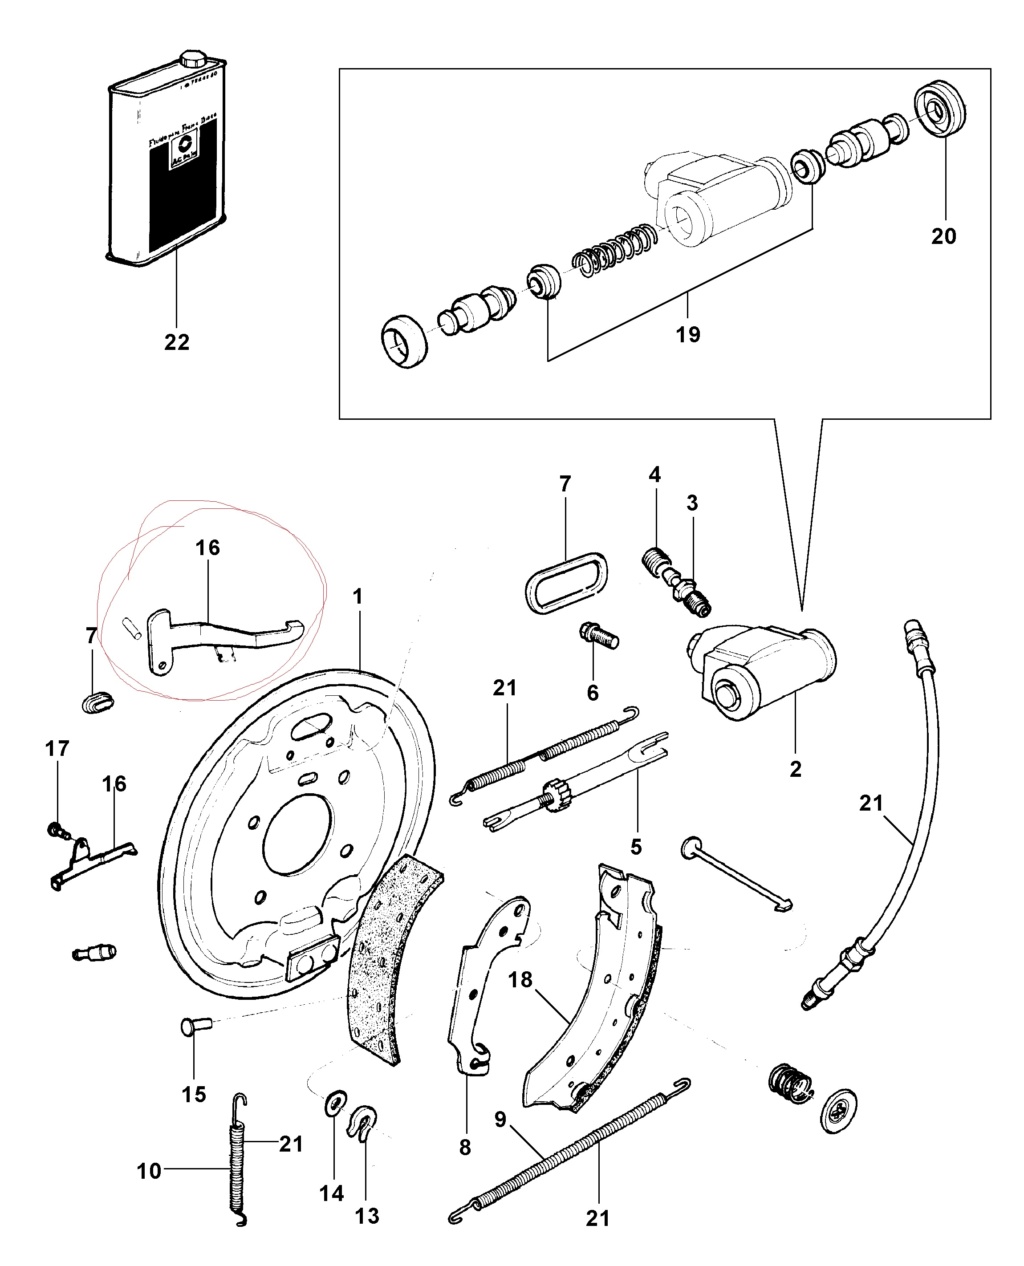 Sistema de freios traseiros a tambor - Manutenção - Página 2 Opala_12